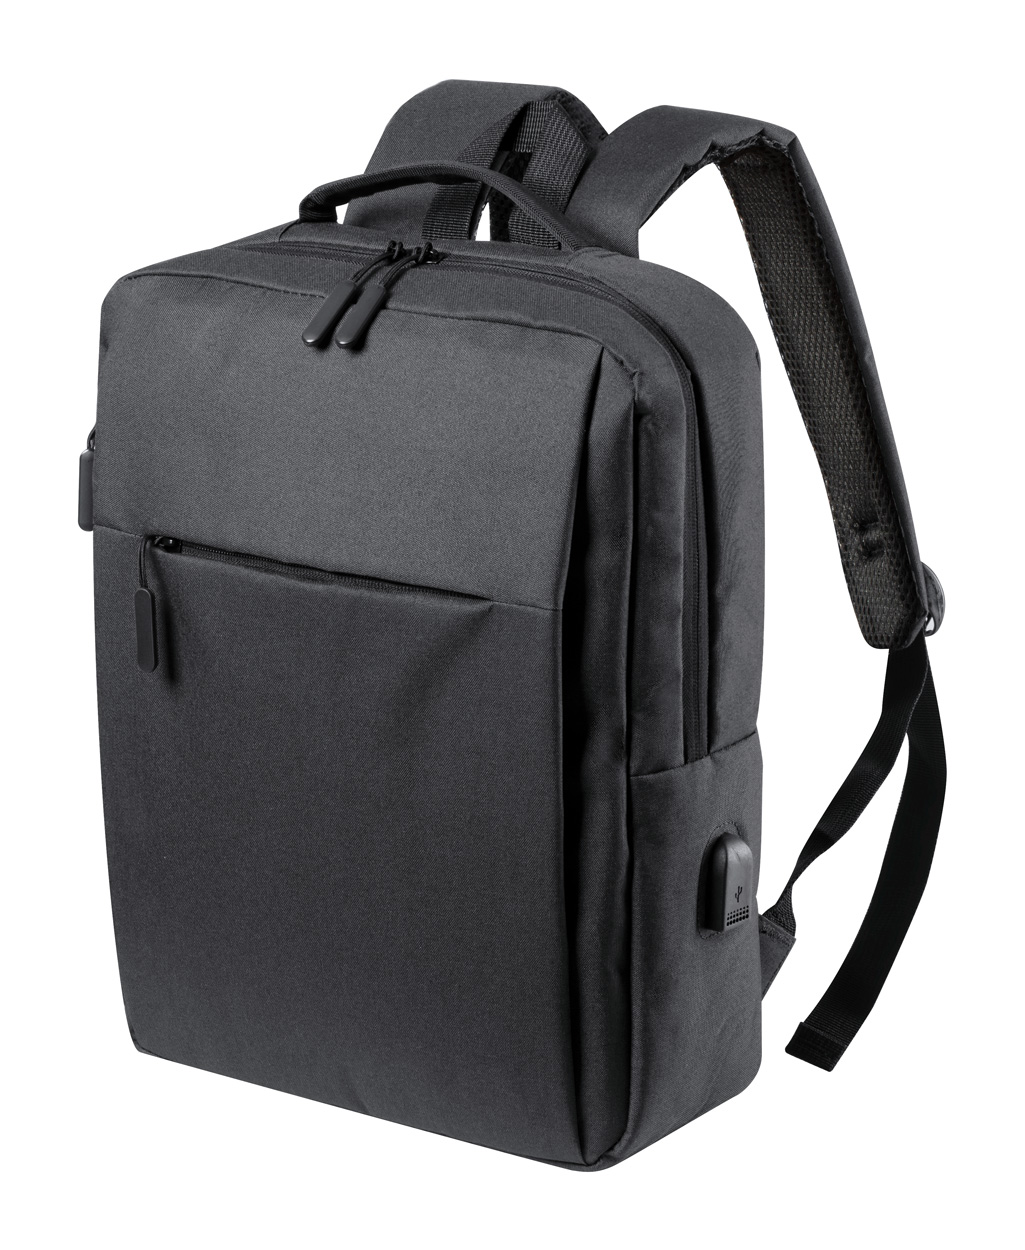 Polyesterový městský batoh PRIKAN s prostorem na notebook